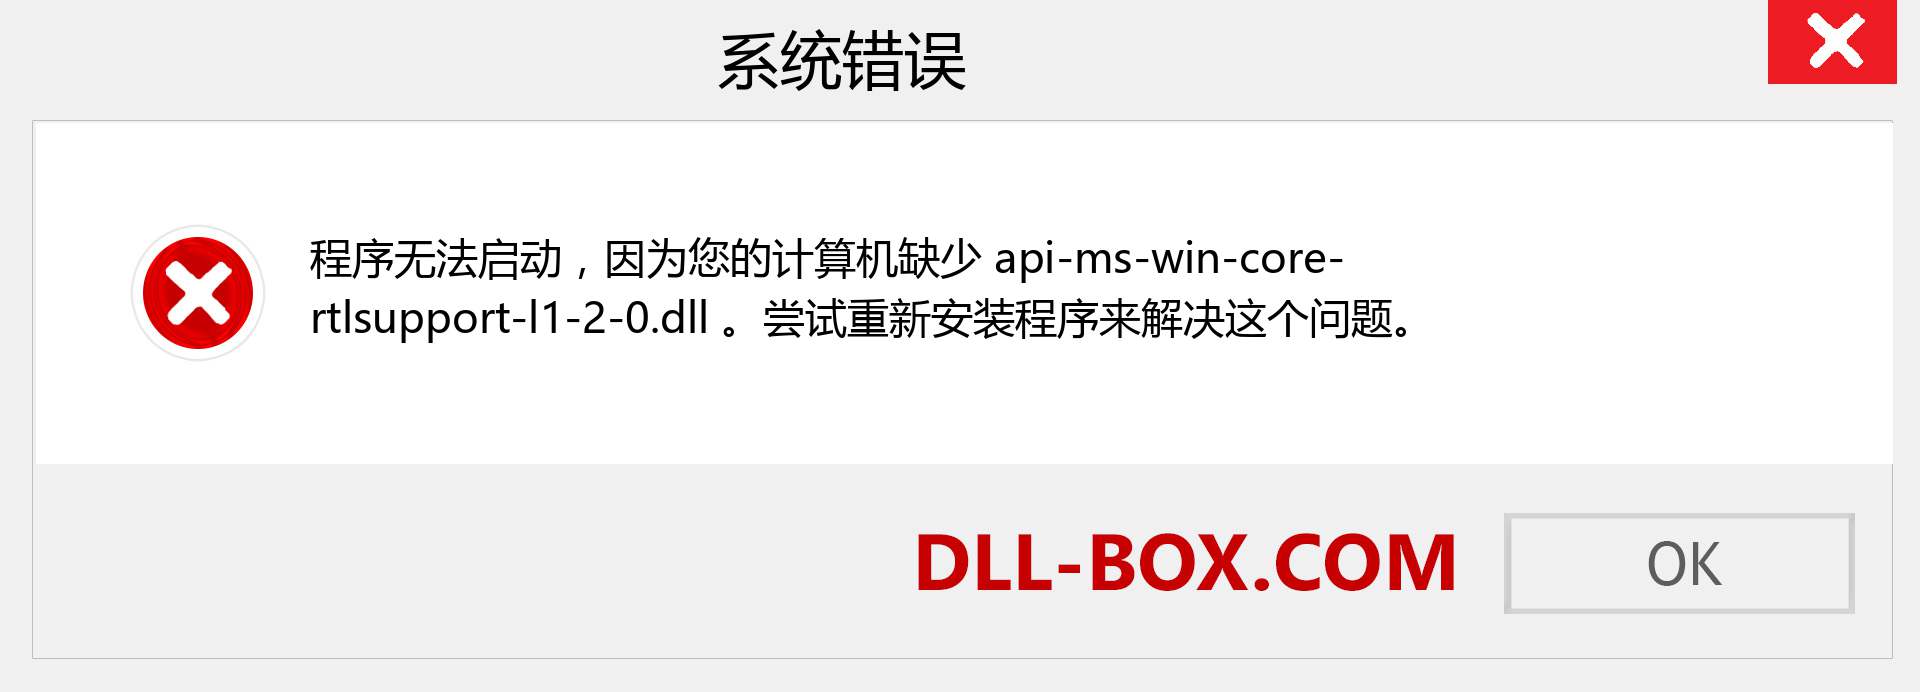 api-ms-win-core-rtlsupport-l1-2-0.dll 文件丢失？。 适用于 Windows 7、8、10 的下载 - 修复 Windows、照片、图像上的 api-ms-win-core-rtlsupport-l1-2-0 dll 丢失错误